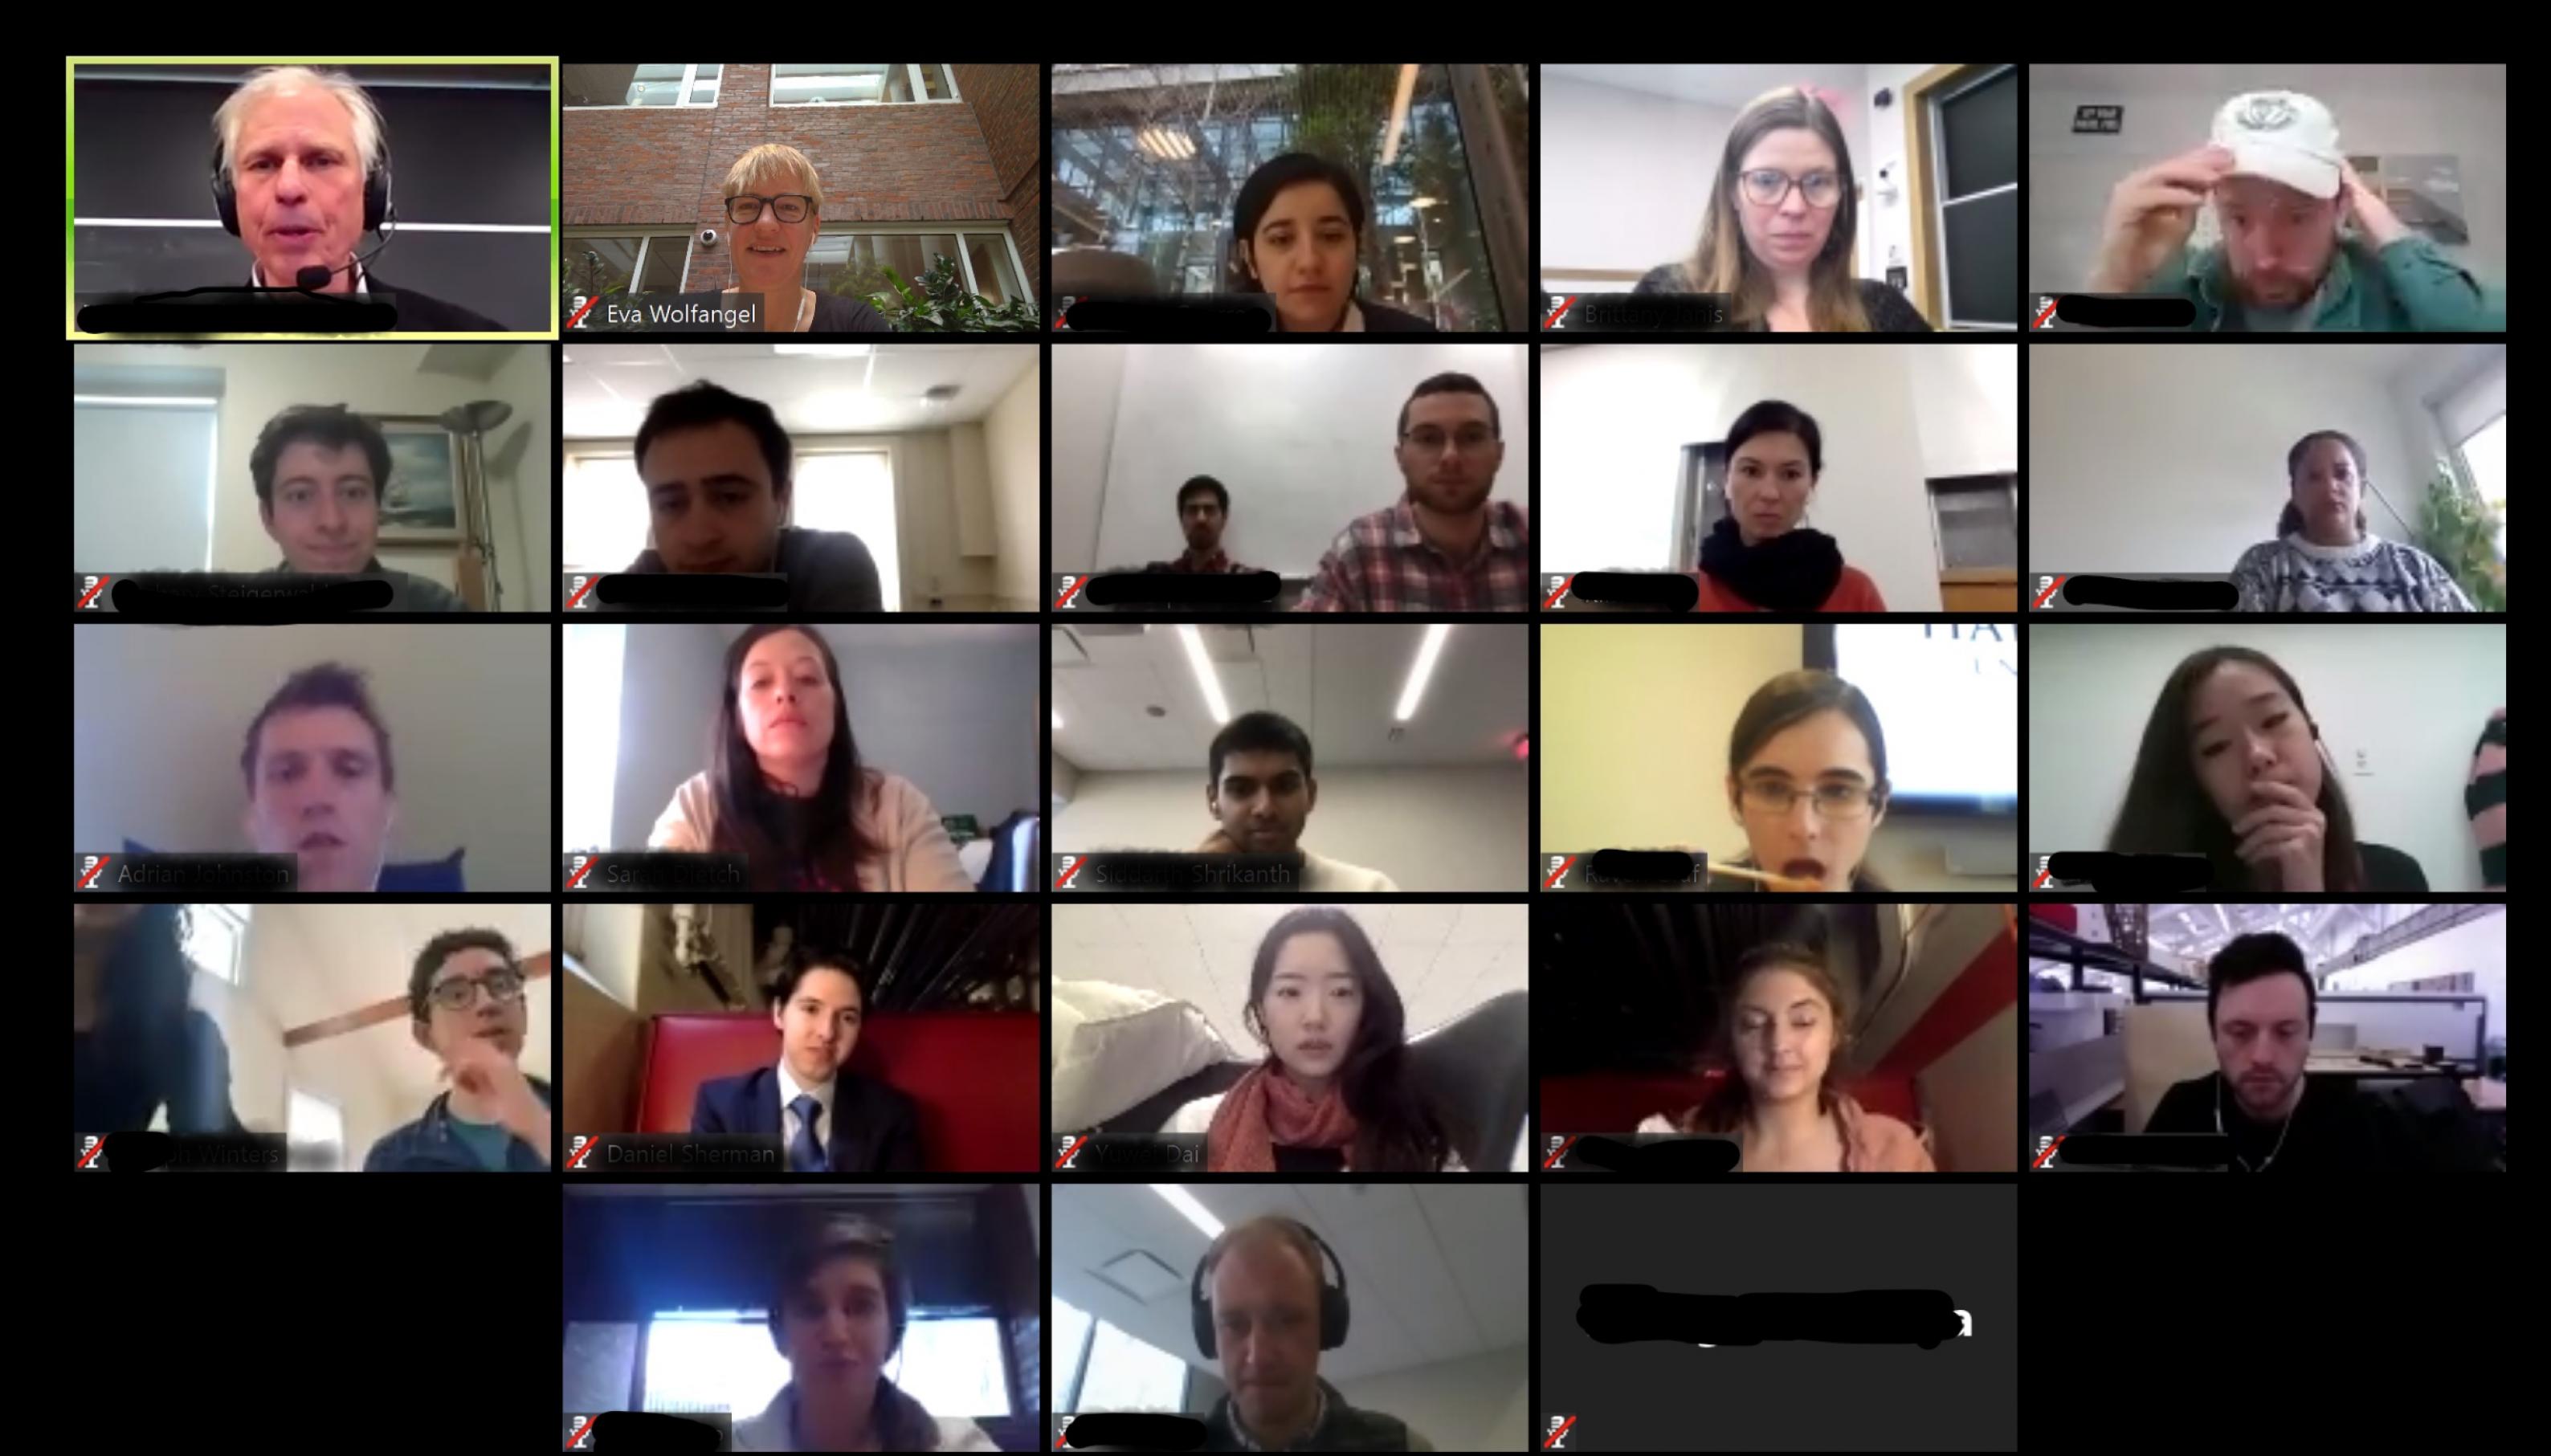 Bildschirmaufnahme einer Video-Konferenz: 23 TeilnehmerInnen, alle separiert in ihrem eigenen kleinen Rechteck.